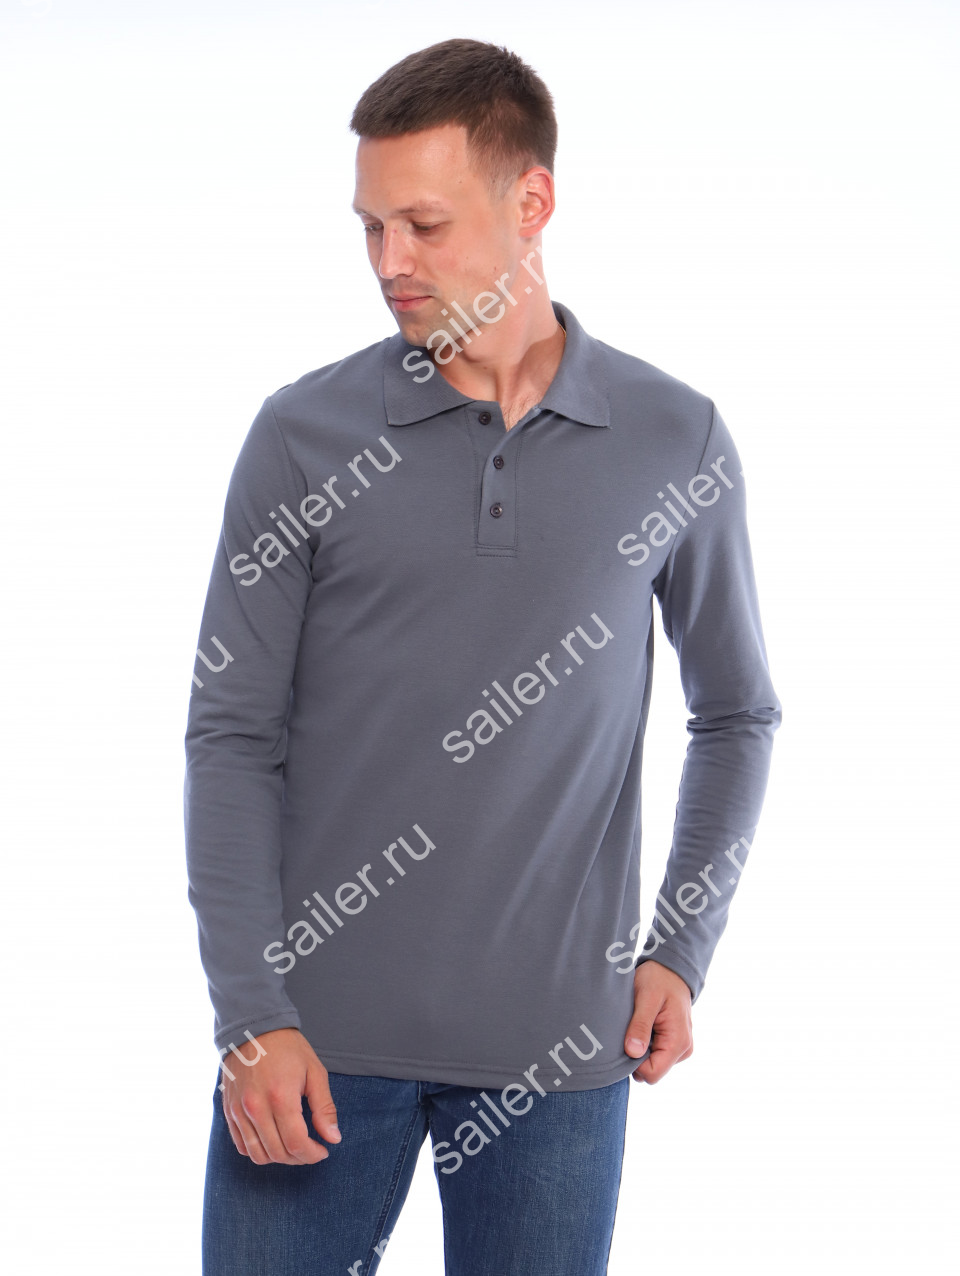 Мужская рубашка ПОЛО длинный рукав М-2 КОМПАКТ (Серый) - Sailer